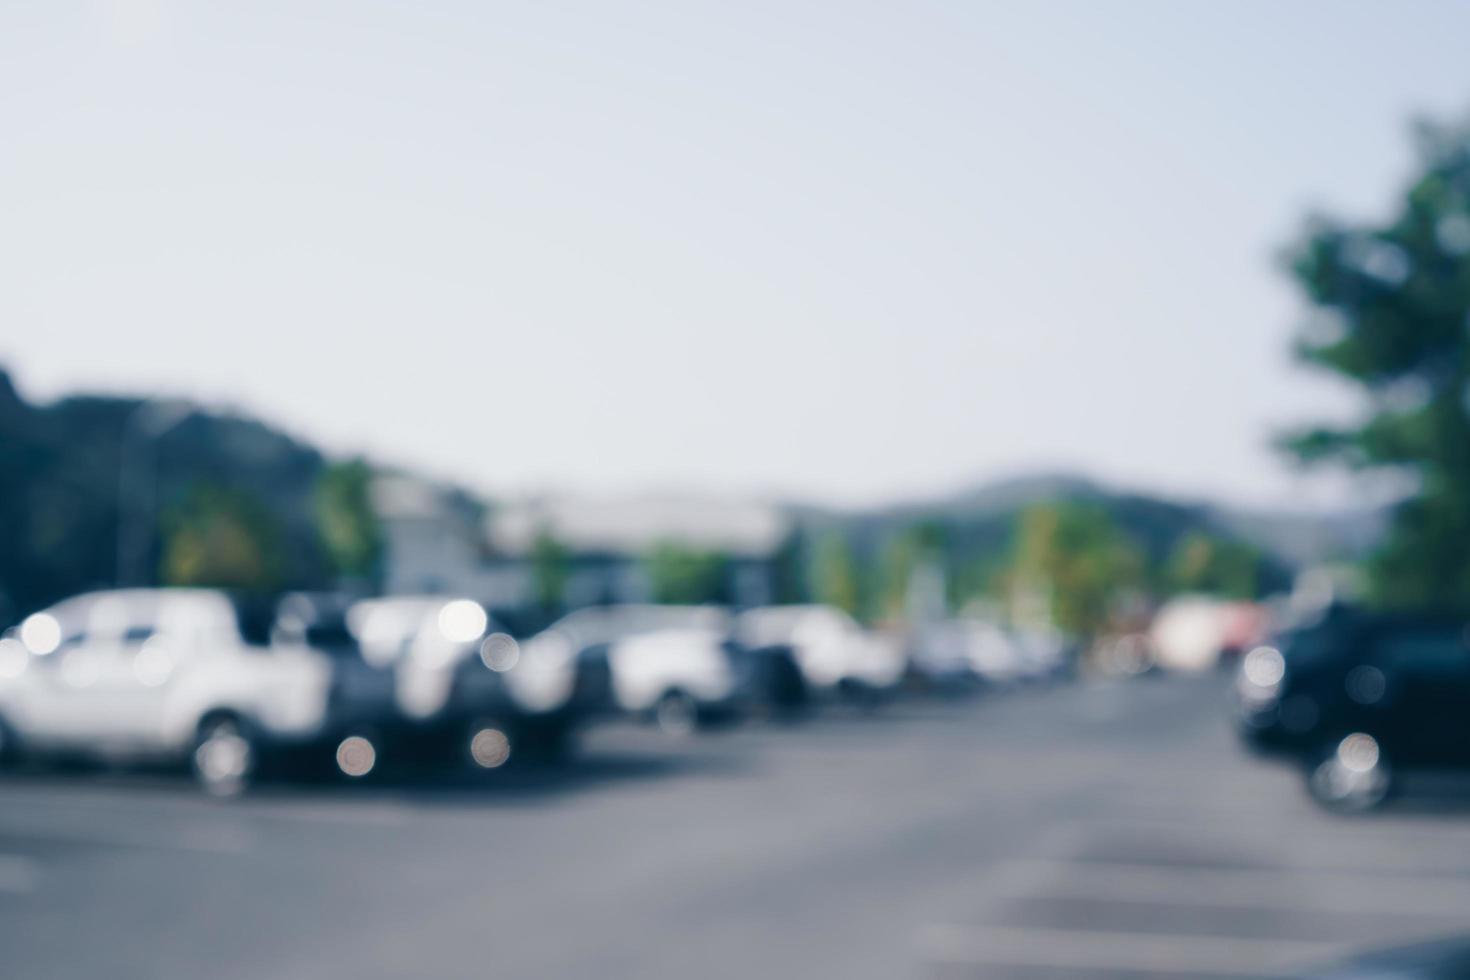 Parking voiture floue avec de nombreuses voitures, fond abstrait photo